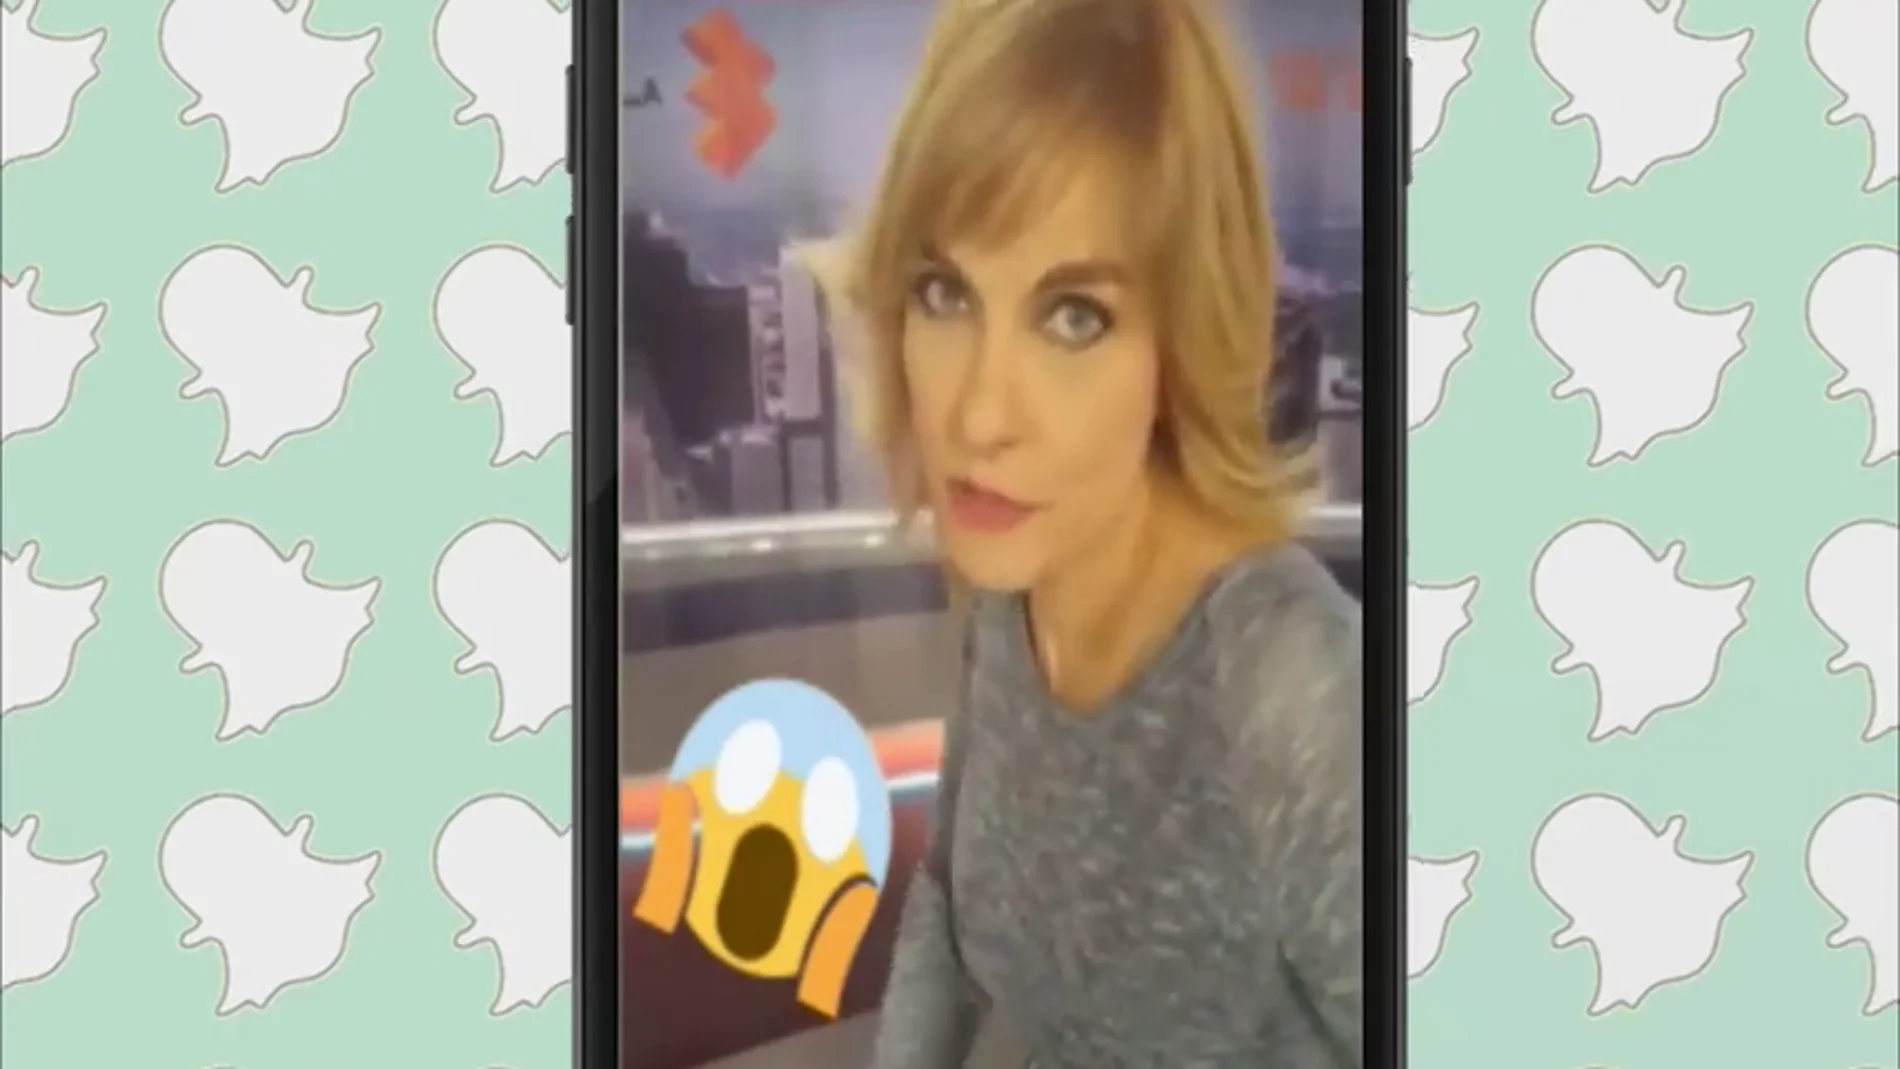 Frame 11.801187 de: Lourdes Maldonado en Snapchat